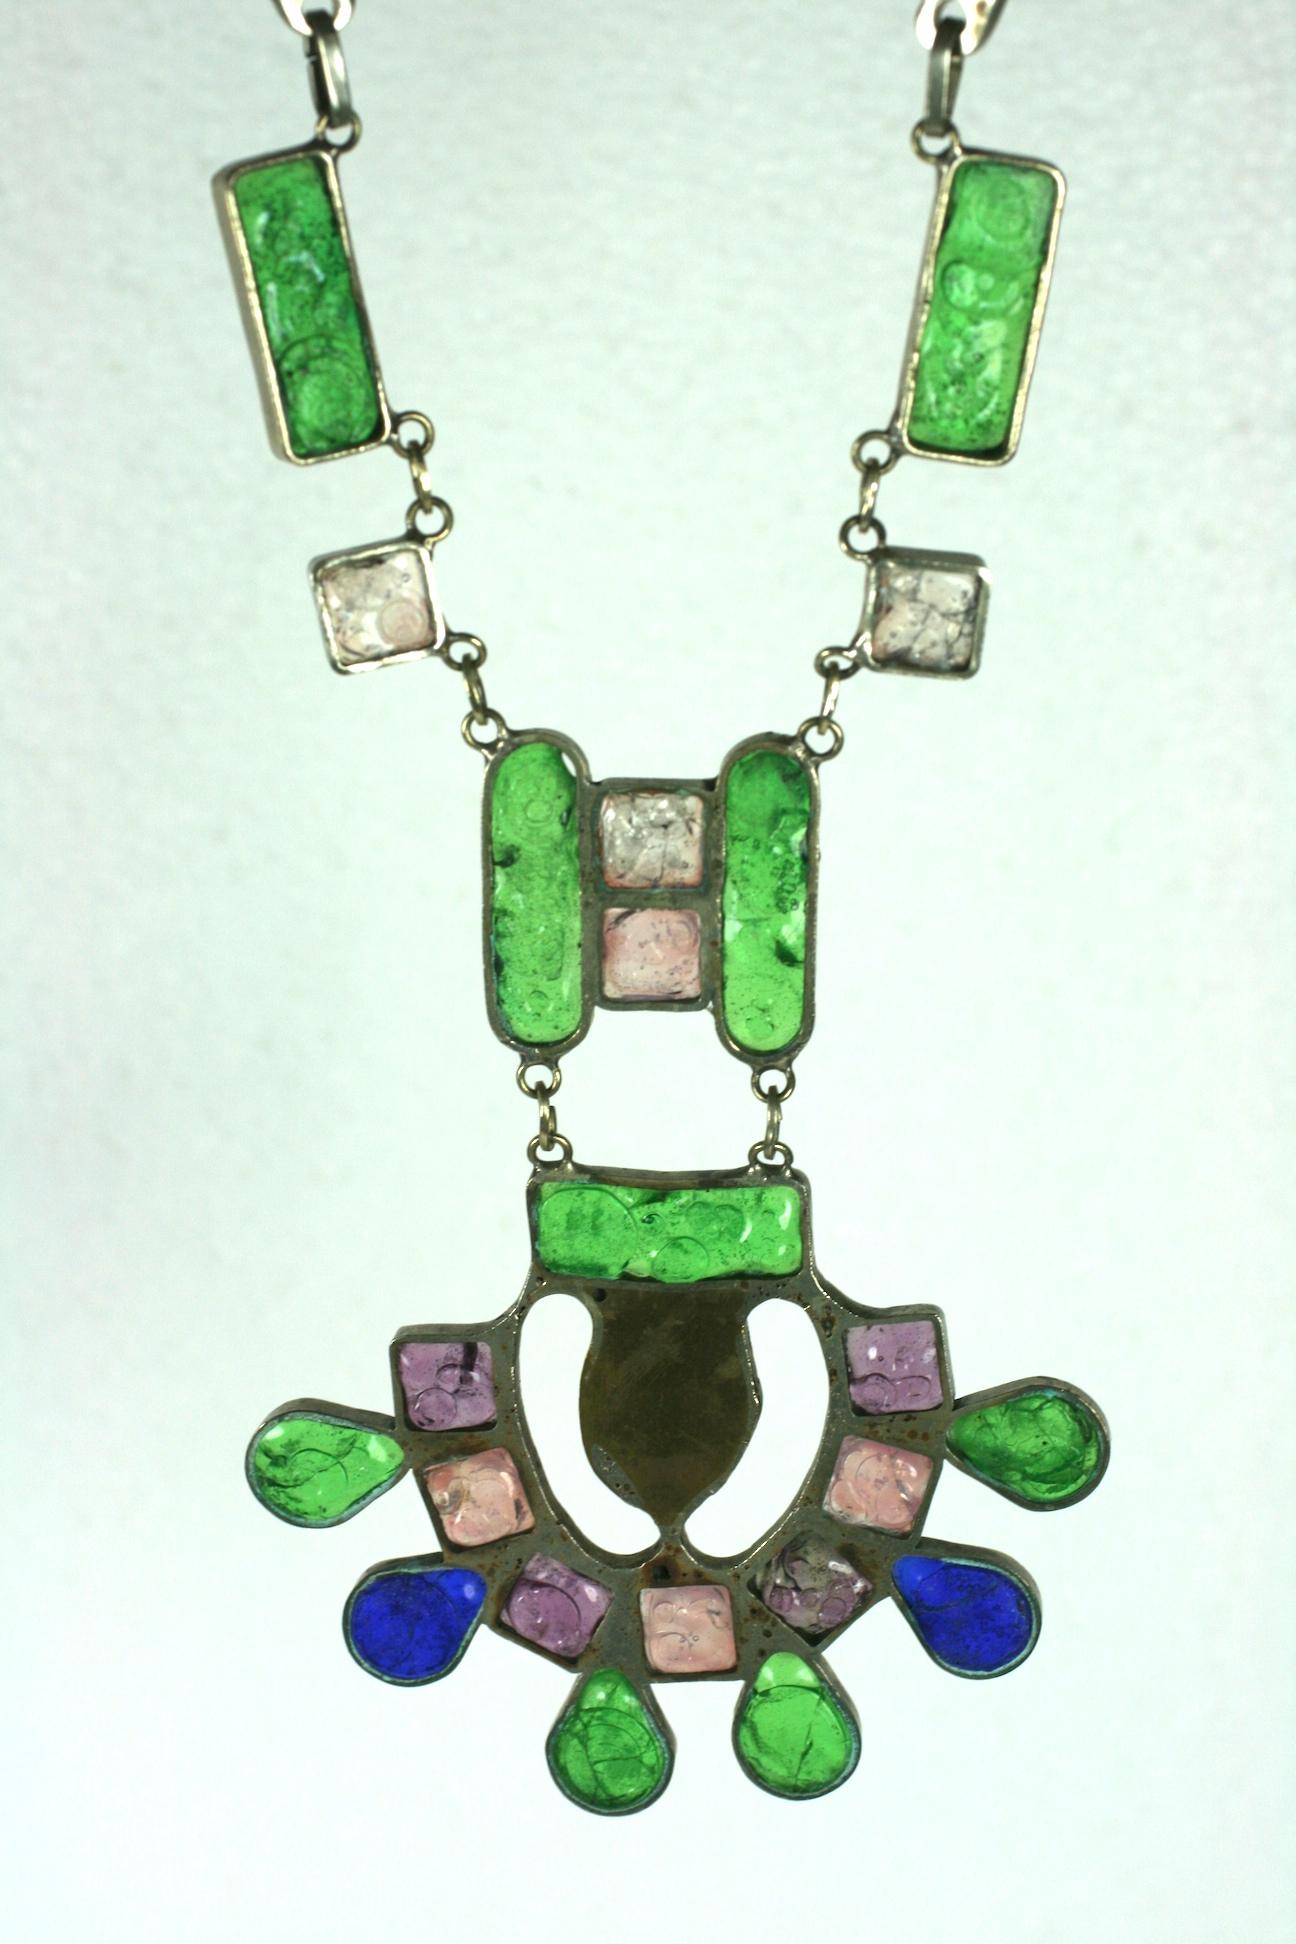 Modernistische Halskette aus handgeschmolzenem Glas aus den 1960er Jahren. Handgefertigte Lünetten aus weißem Metall bilden die Vertiefungen für das geschmolzene Glas. Das Glas weist gesprenkelte Strukturmarkierungen auf, die das Muster der